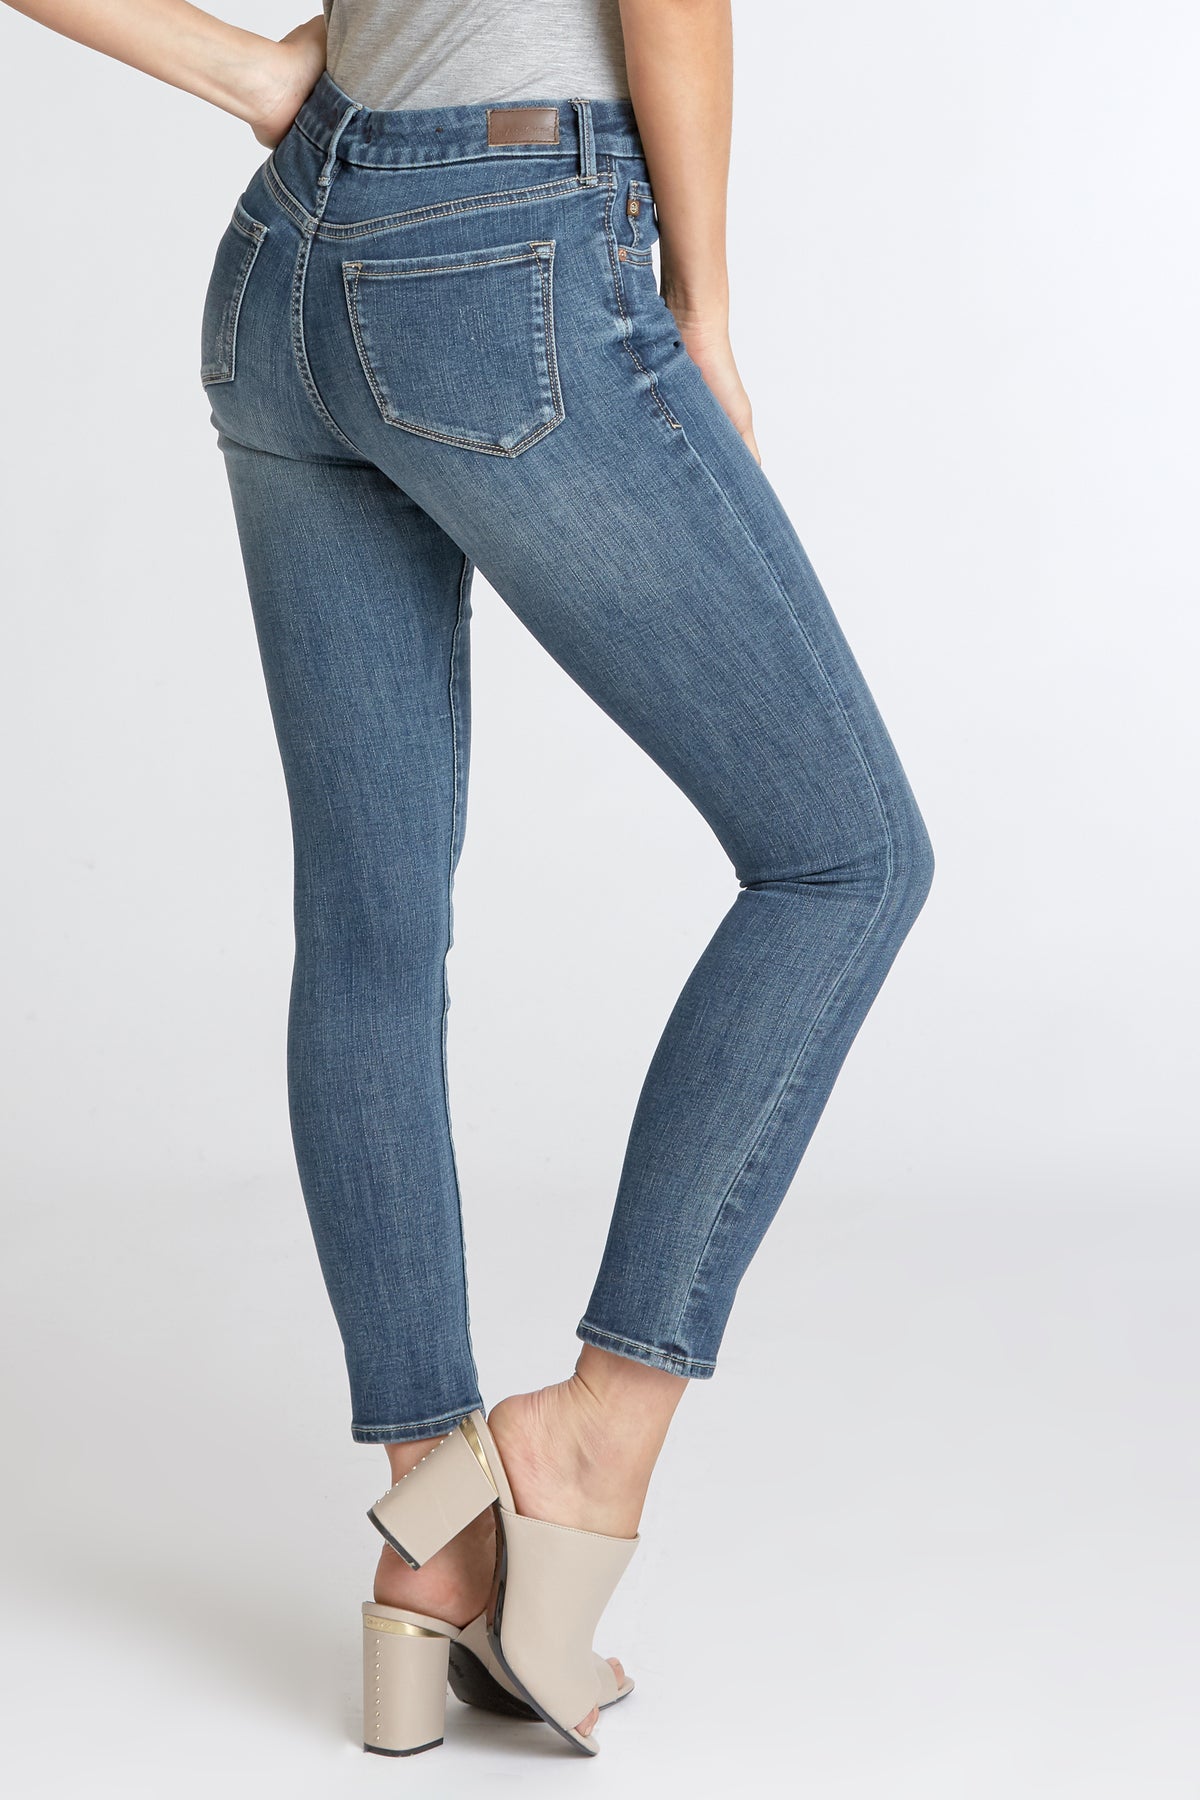 Dear John Denim: Gisele Skinny Jeans, Brooklyn